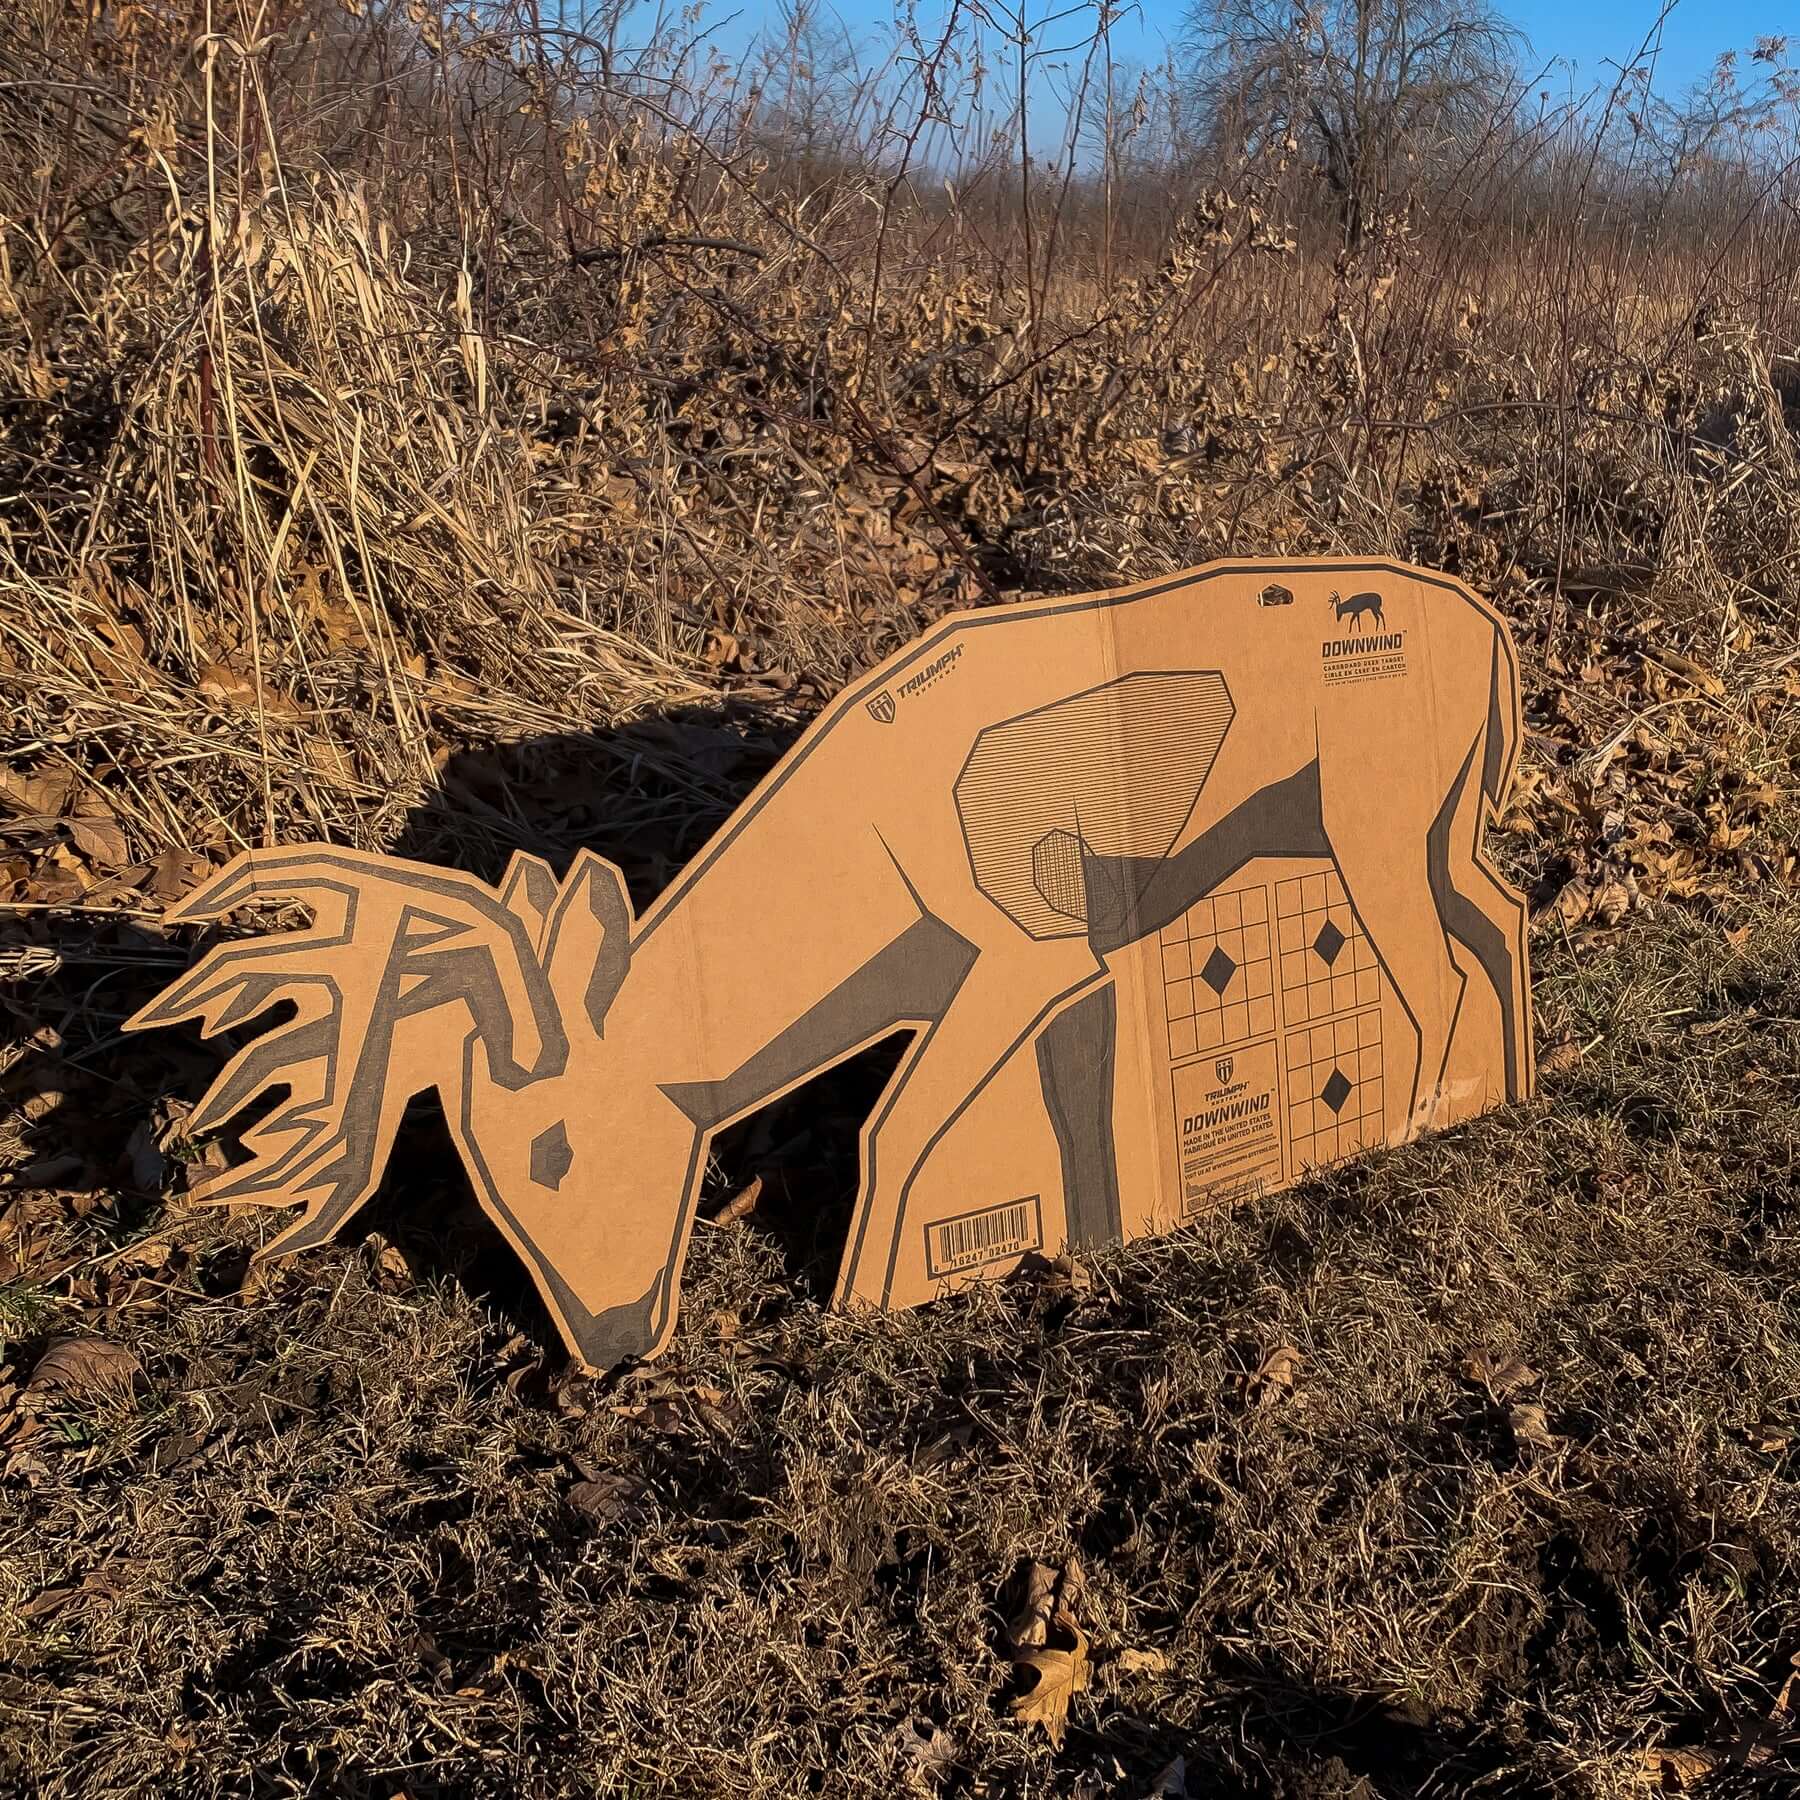 Downwind Deer Cardboard Target